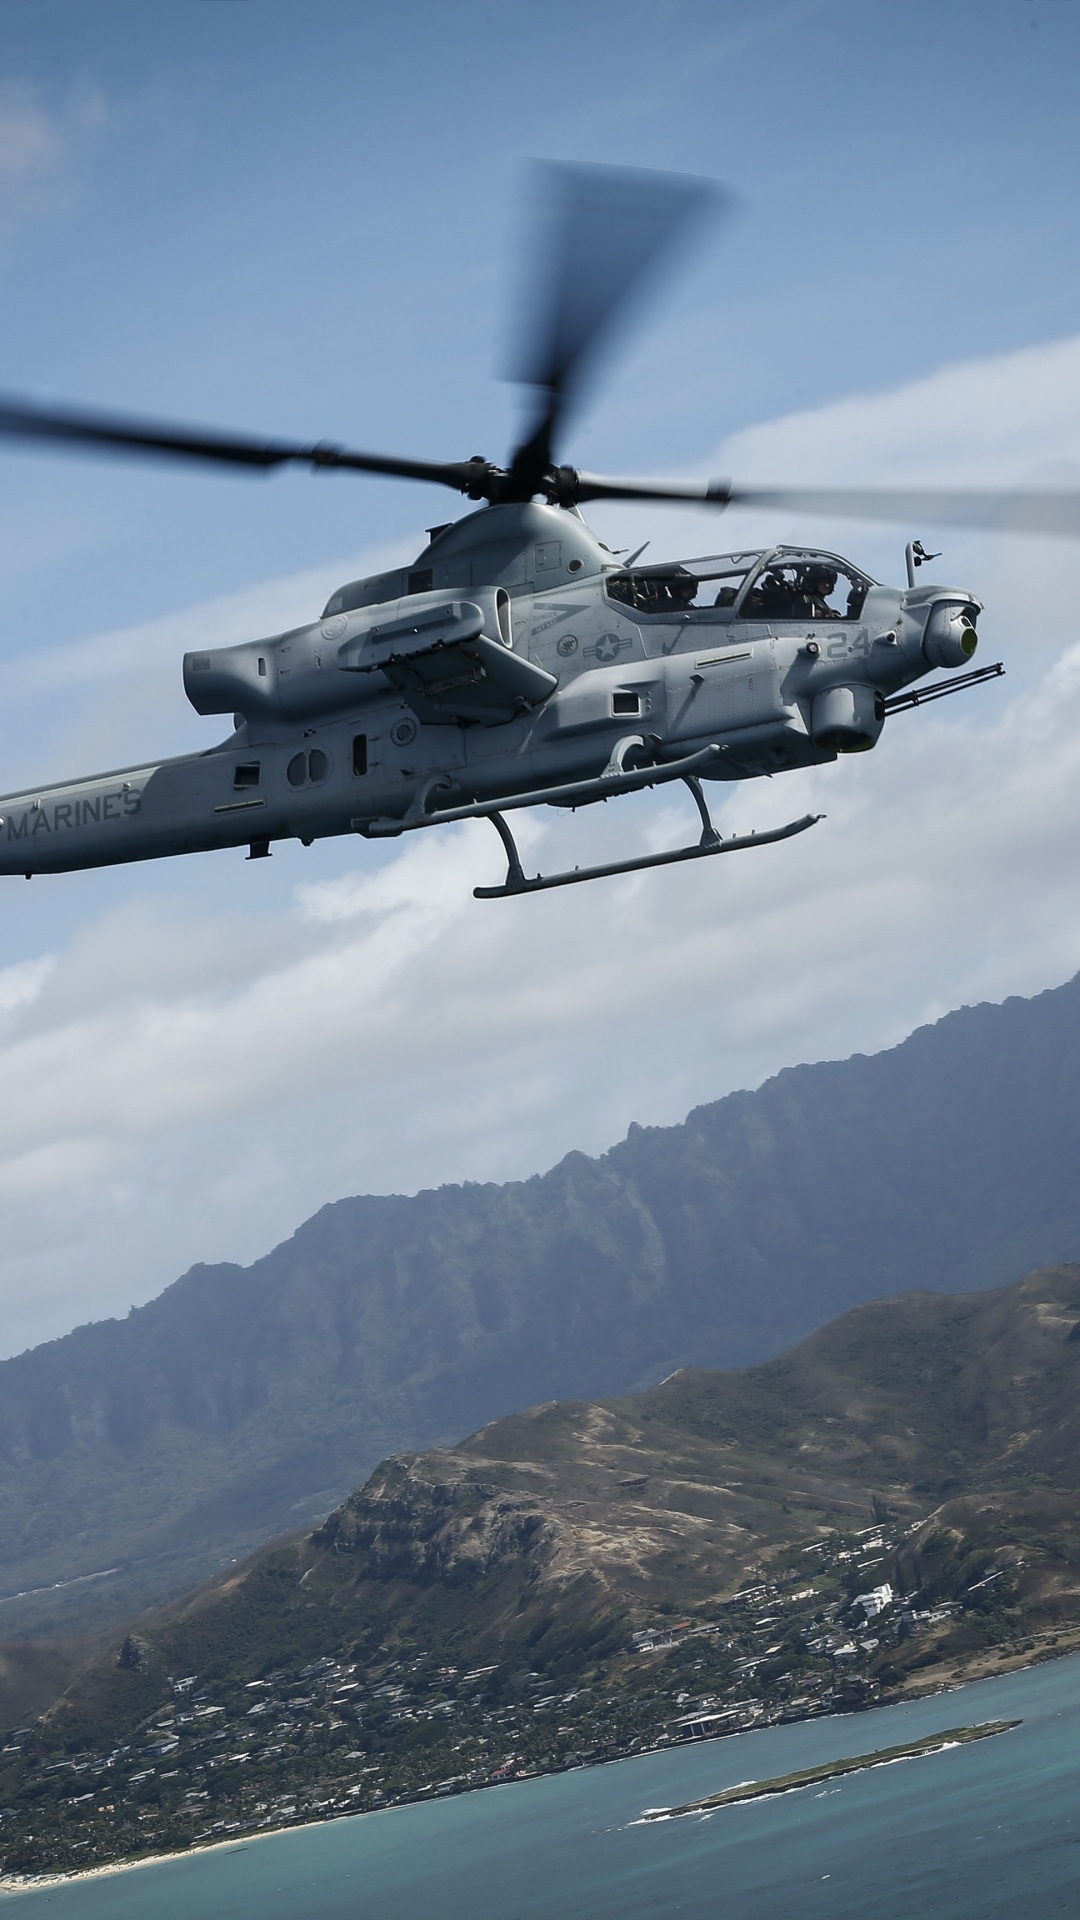 Helicóptero Blanco y Negro Sobrevolando la Montaña Durante el Día. Wallpaper in 1080x1920 Resolution